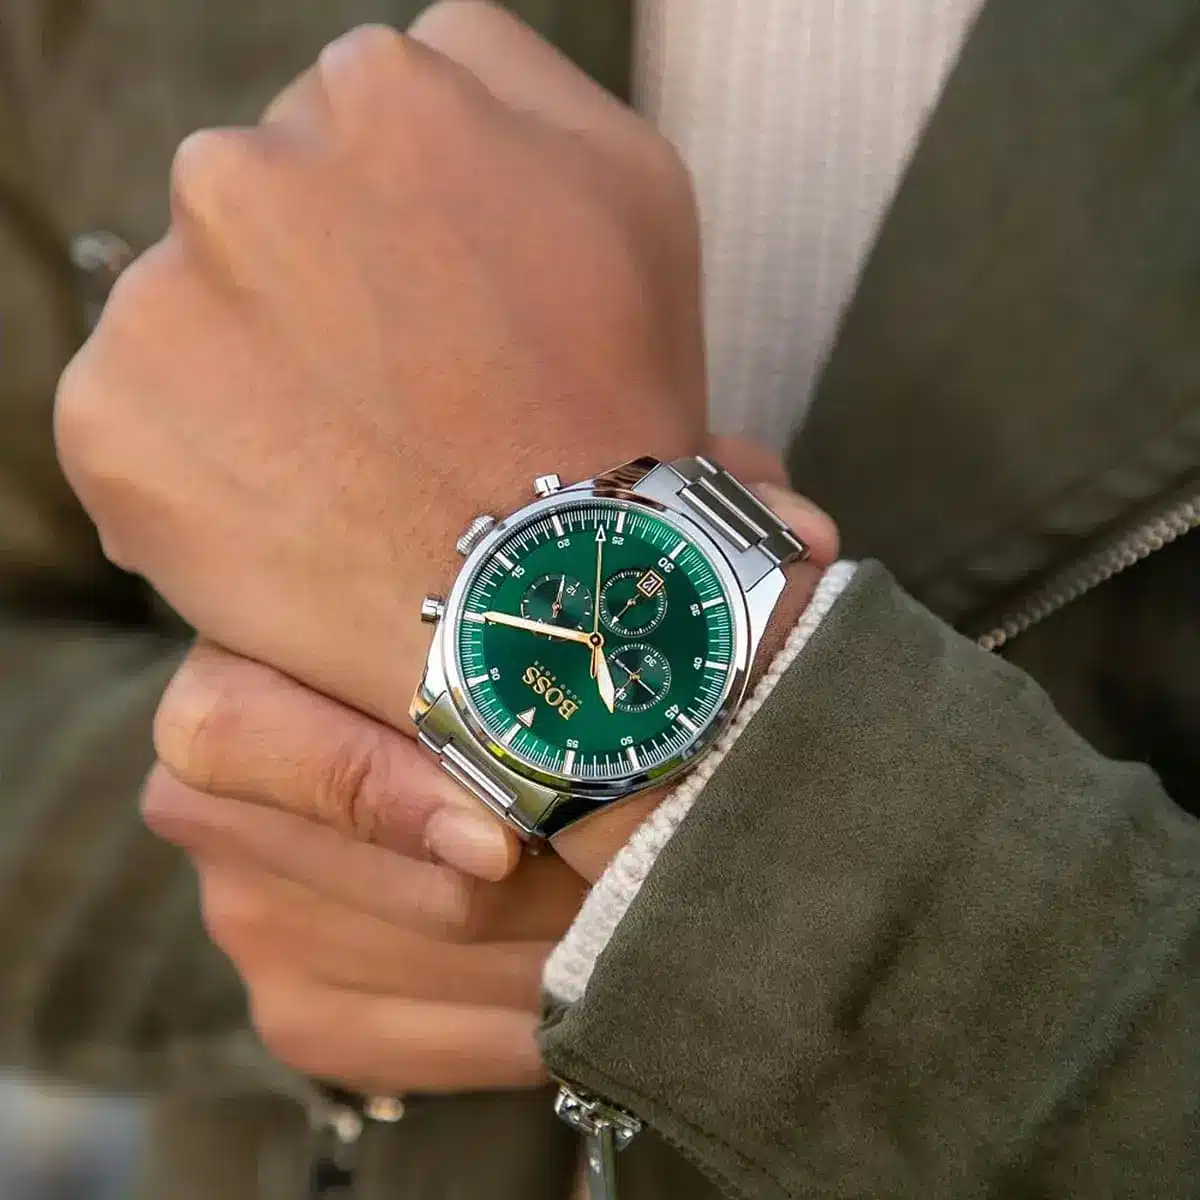 Hugo Boss Men's Watch Pioneer 1513868 | Watches Prime